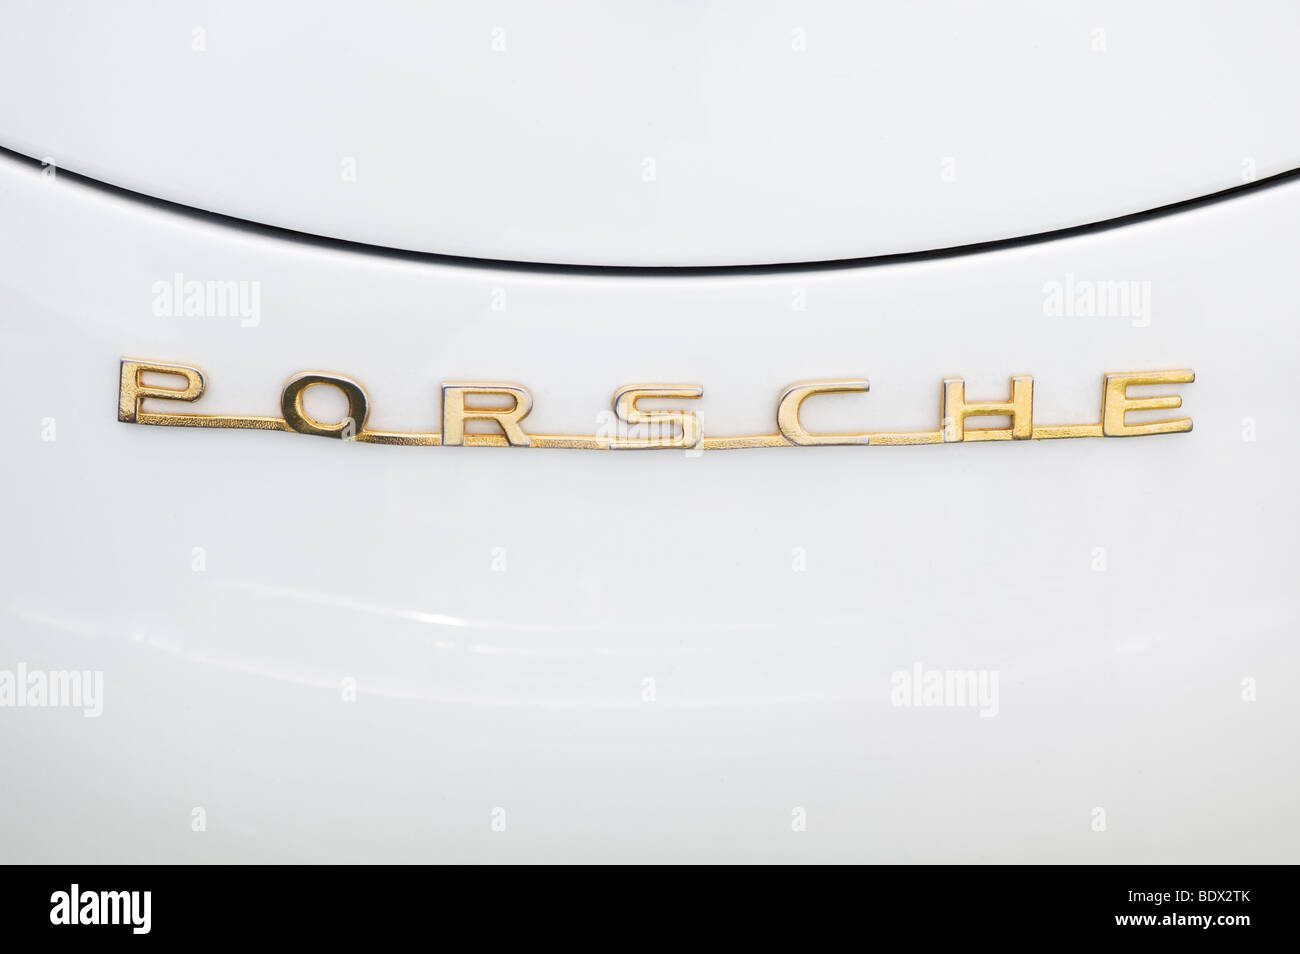 Porsche 1600 super speedstar, name plate on bonnet Stock Photo